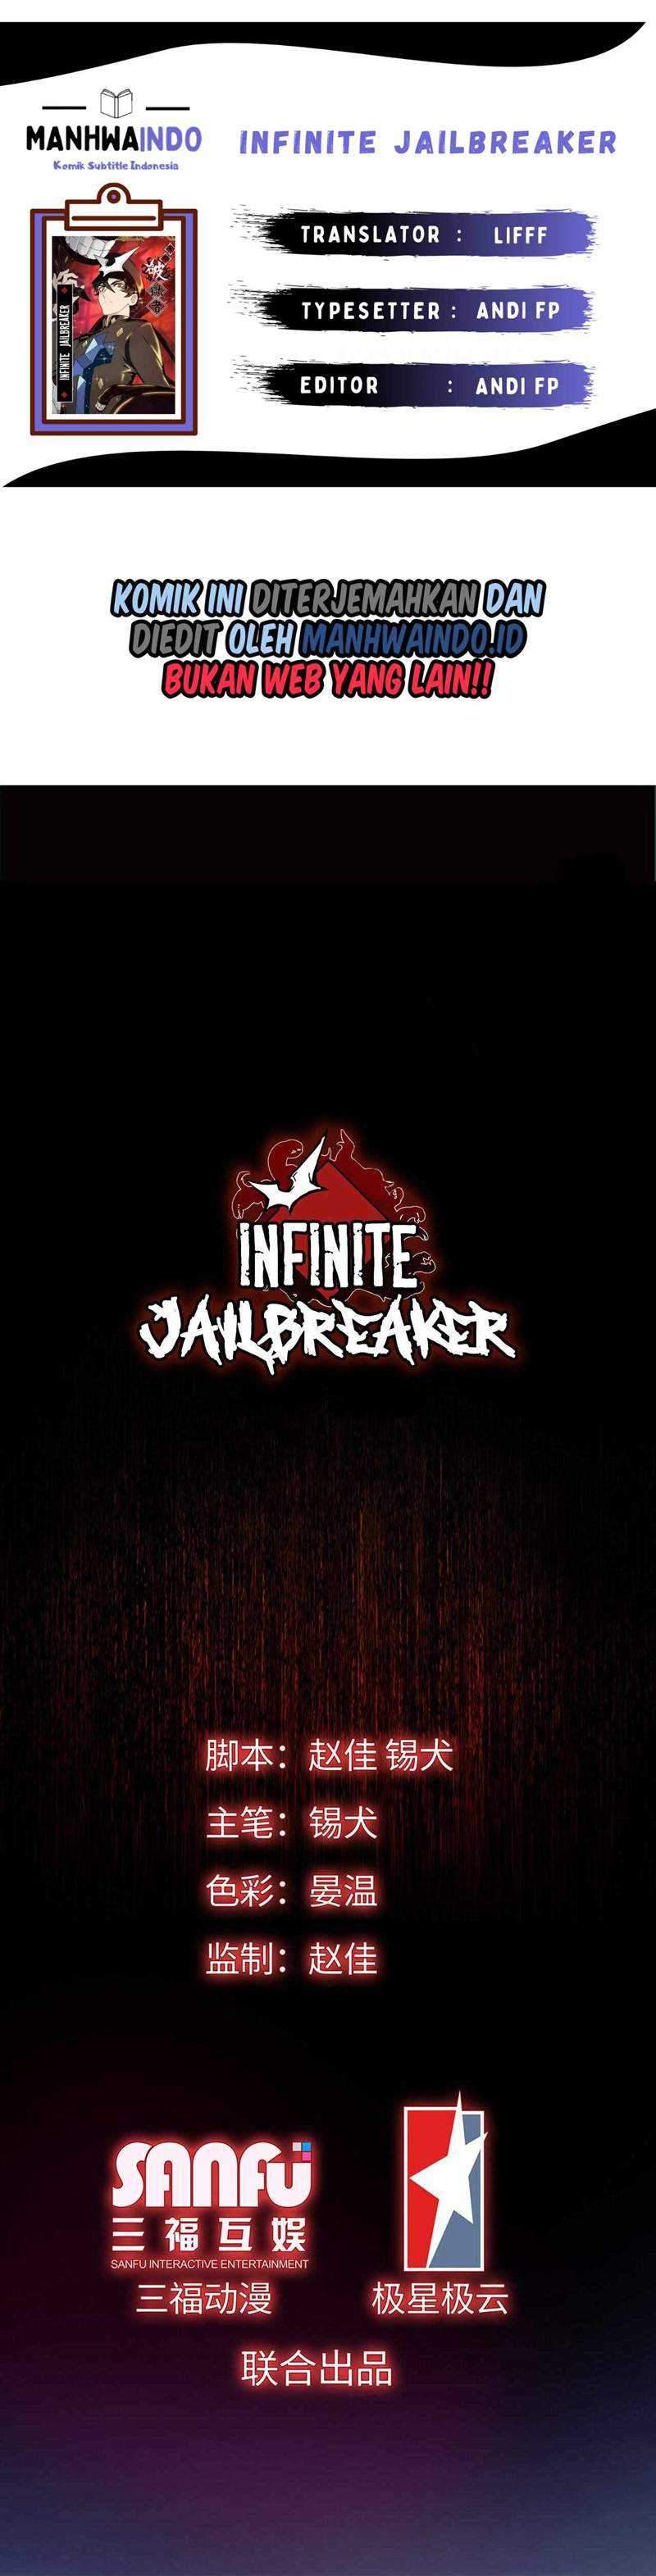 Infinite Jailbreaker Chapter 04 1